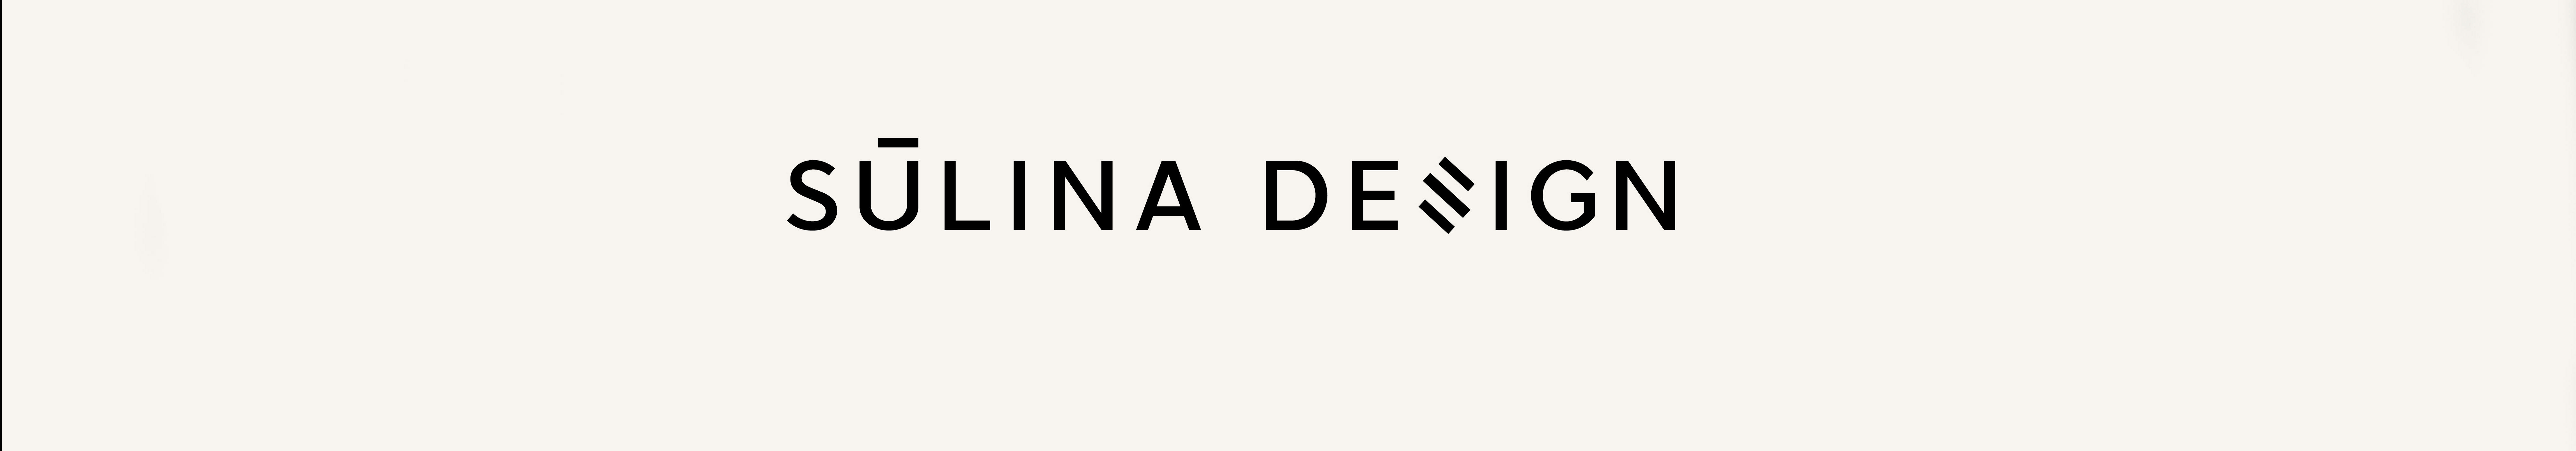 Alina Sulina Design profil başlığı